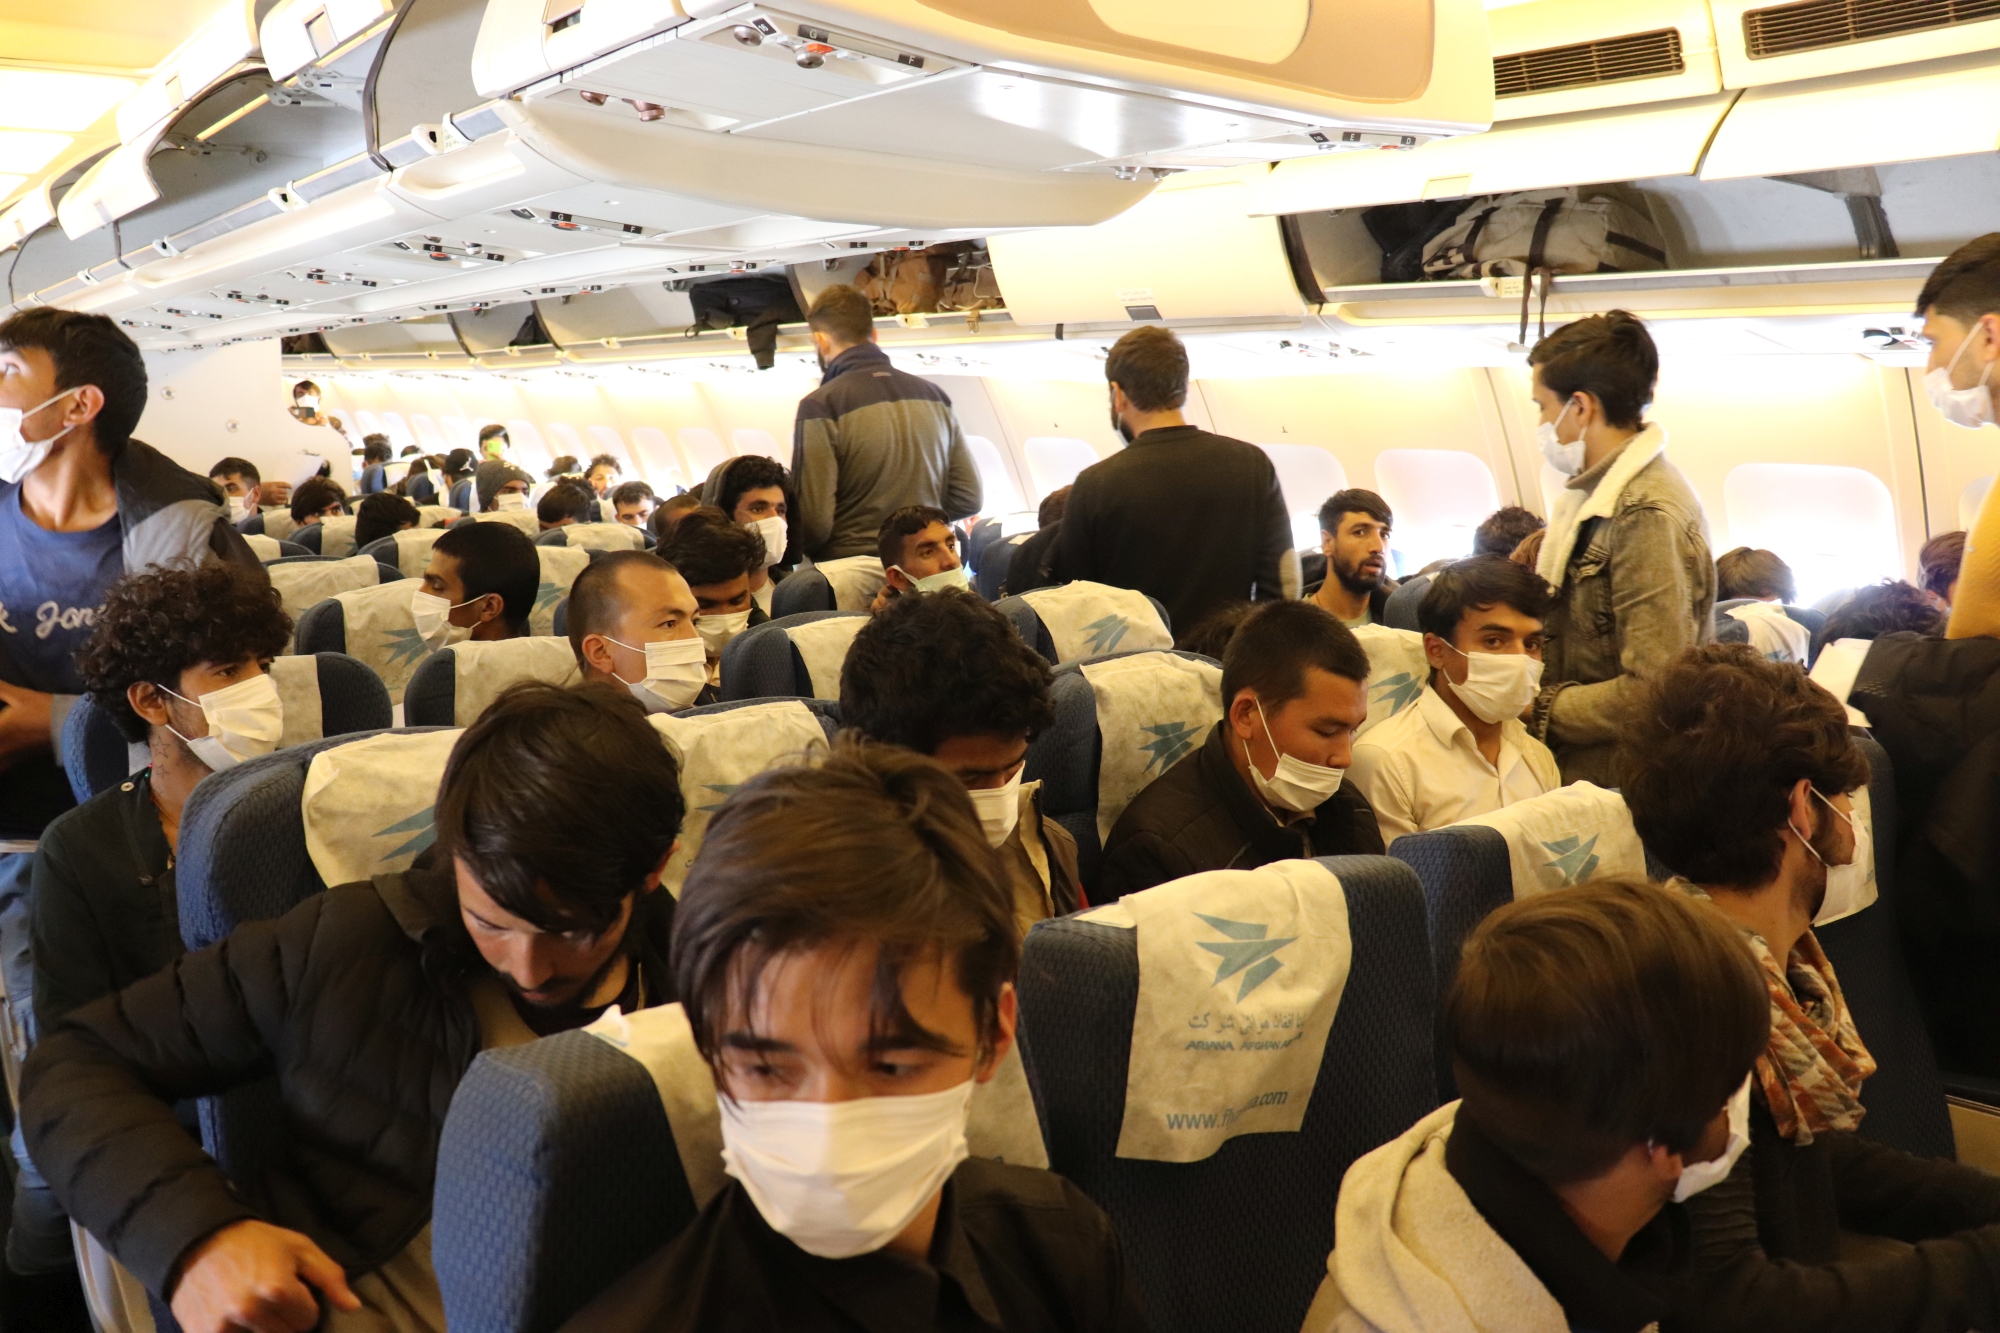 İçişleri Bakanlığı Göç İdaresi Başkanlığı’na bağlı Malatya’daki Geri Gönderme Merkezinde son 4 gün içerisinde 908 Afganistan uyruklu düzensiz göçmen uçakla ülkelerine gönderildi.